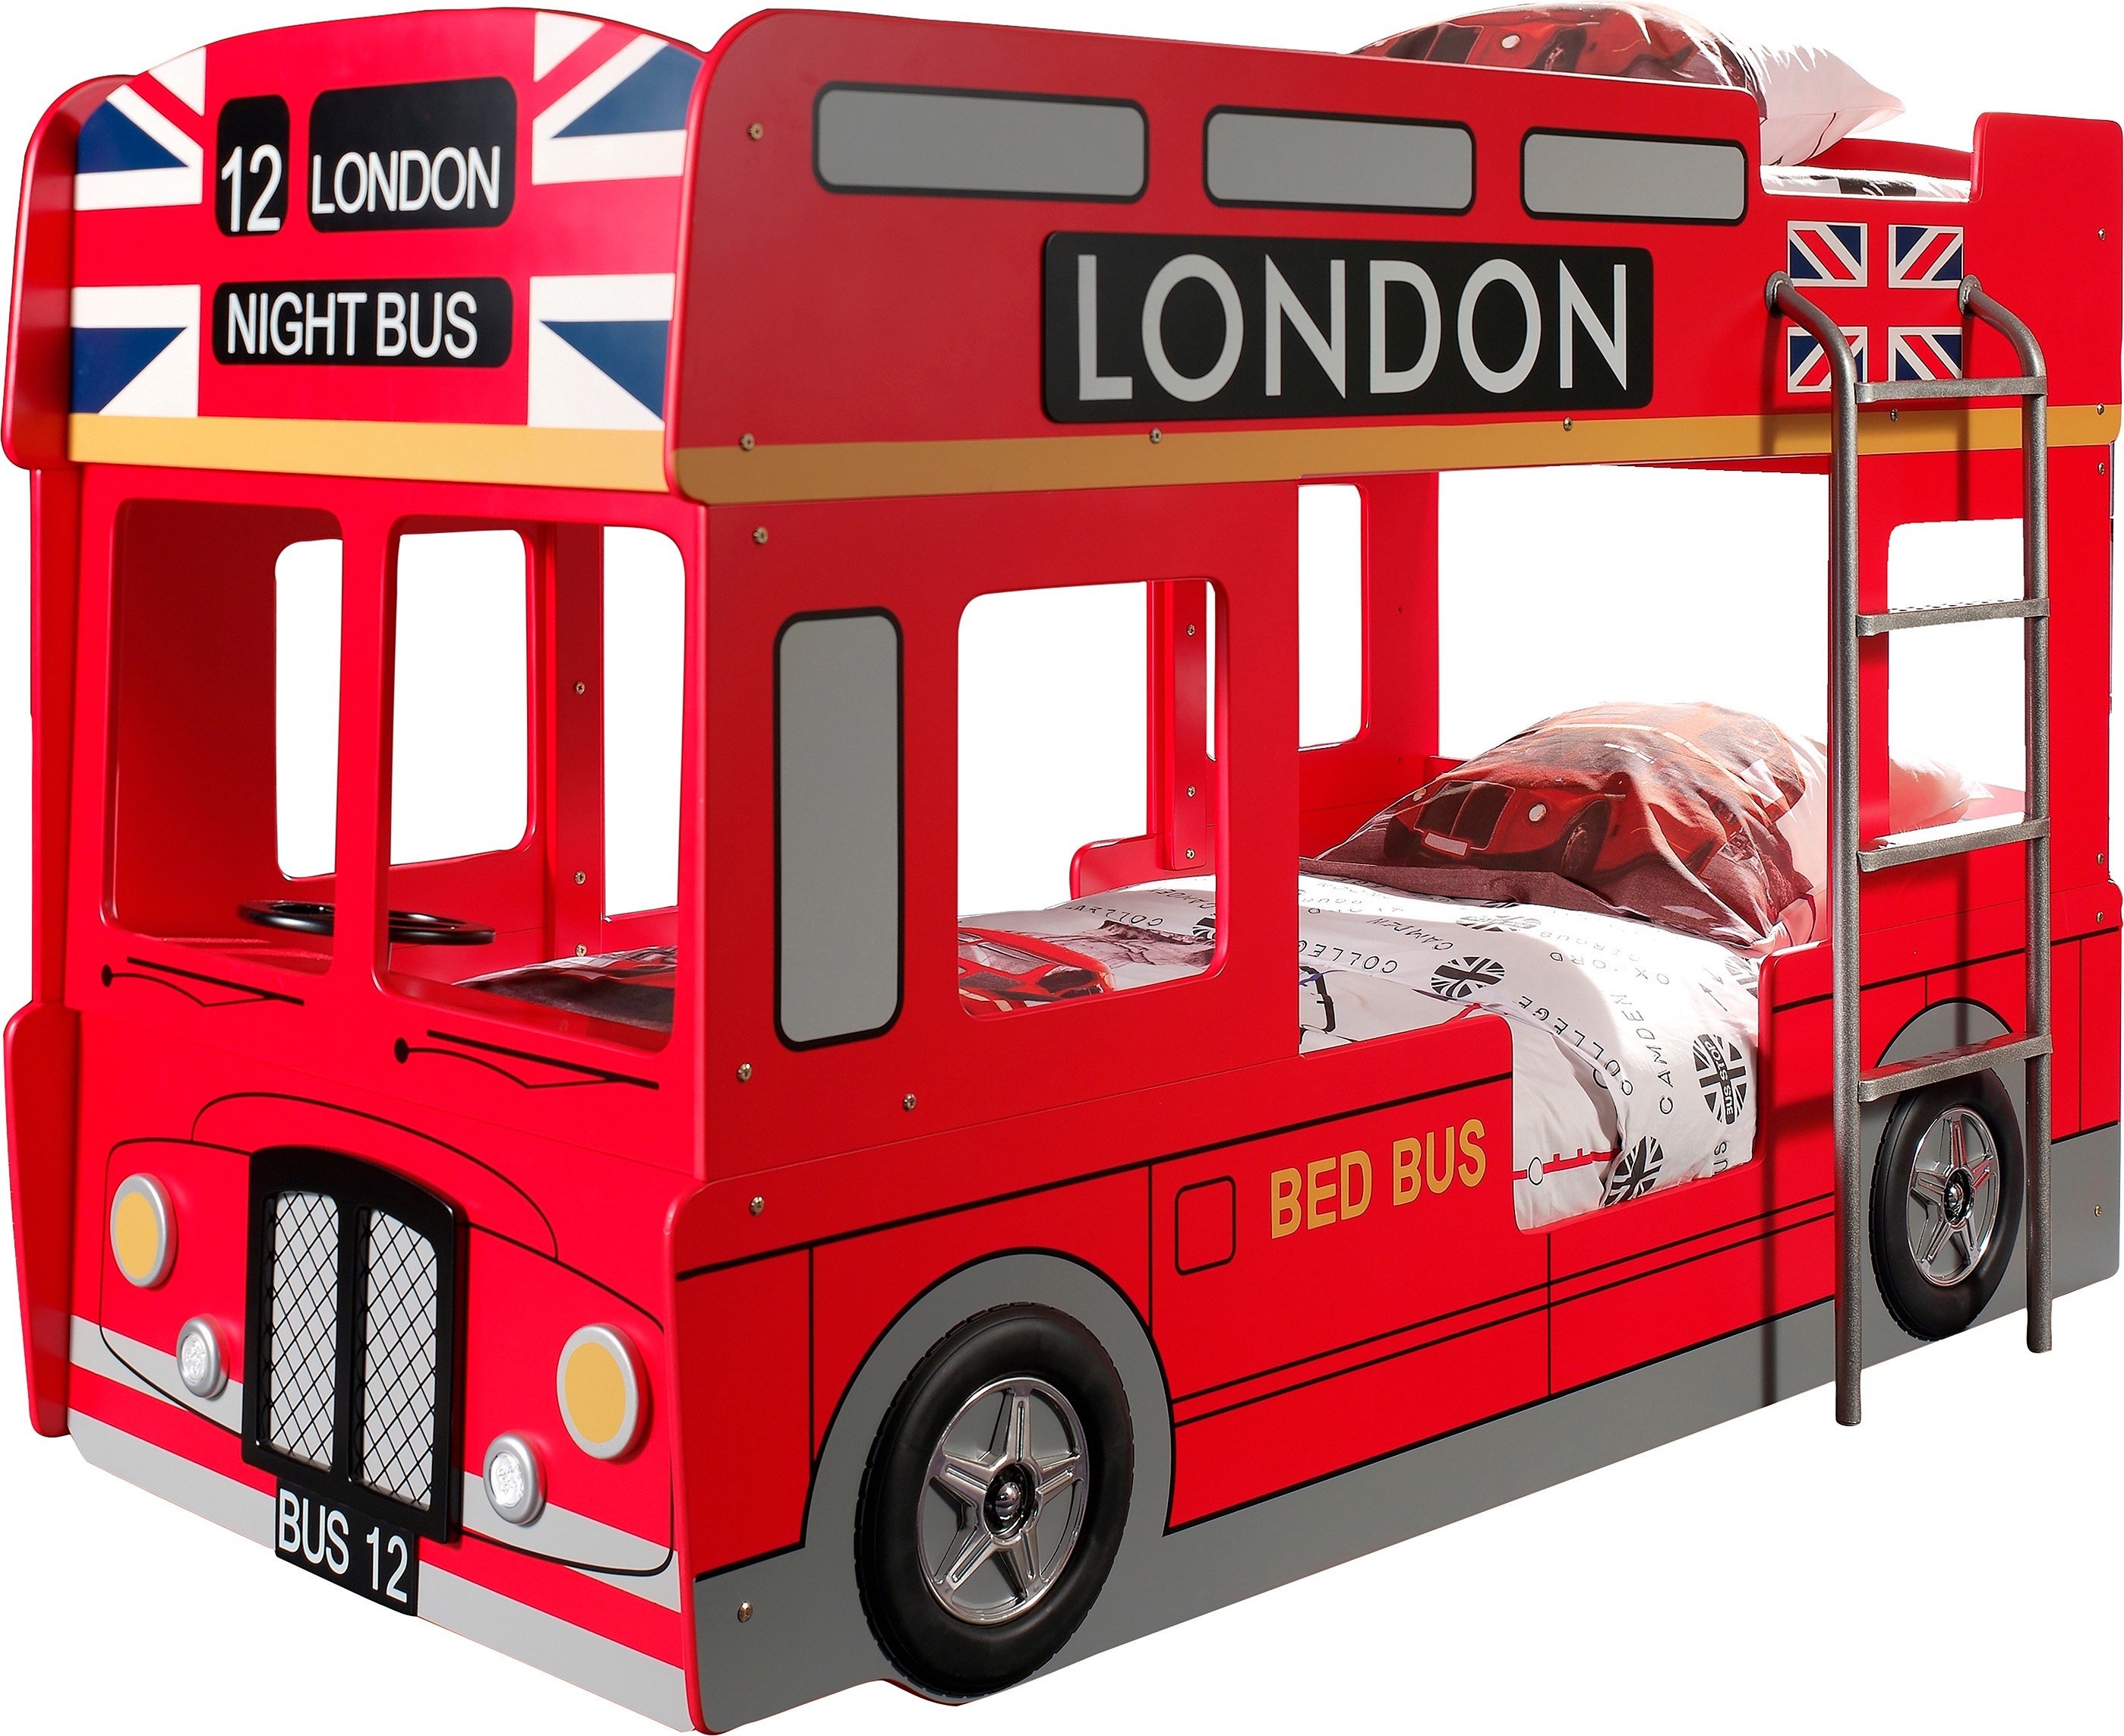 Image of Vipack Etagenbett, im Design von einem Londoner Doppeldecker Busses, inklusive LED Beleuchtung bei Ackermann Versand Schweiz